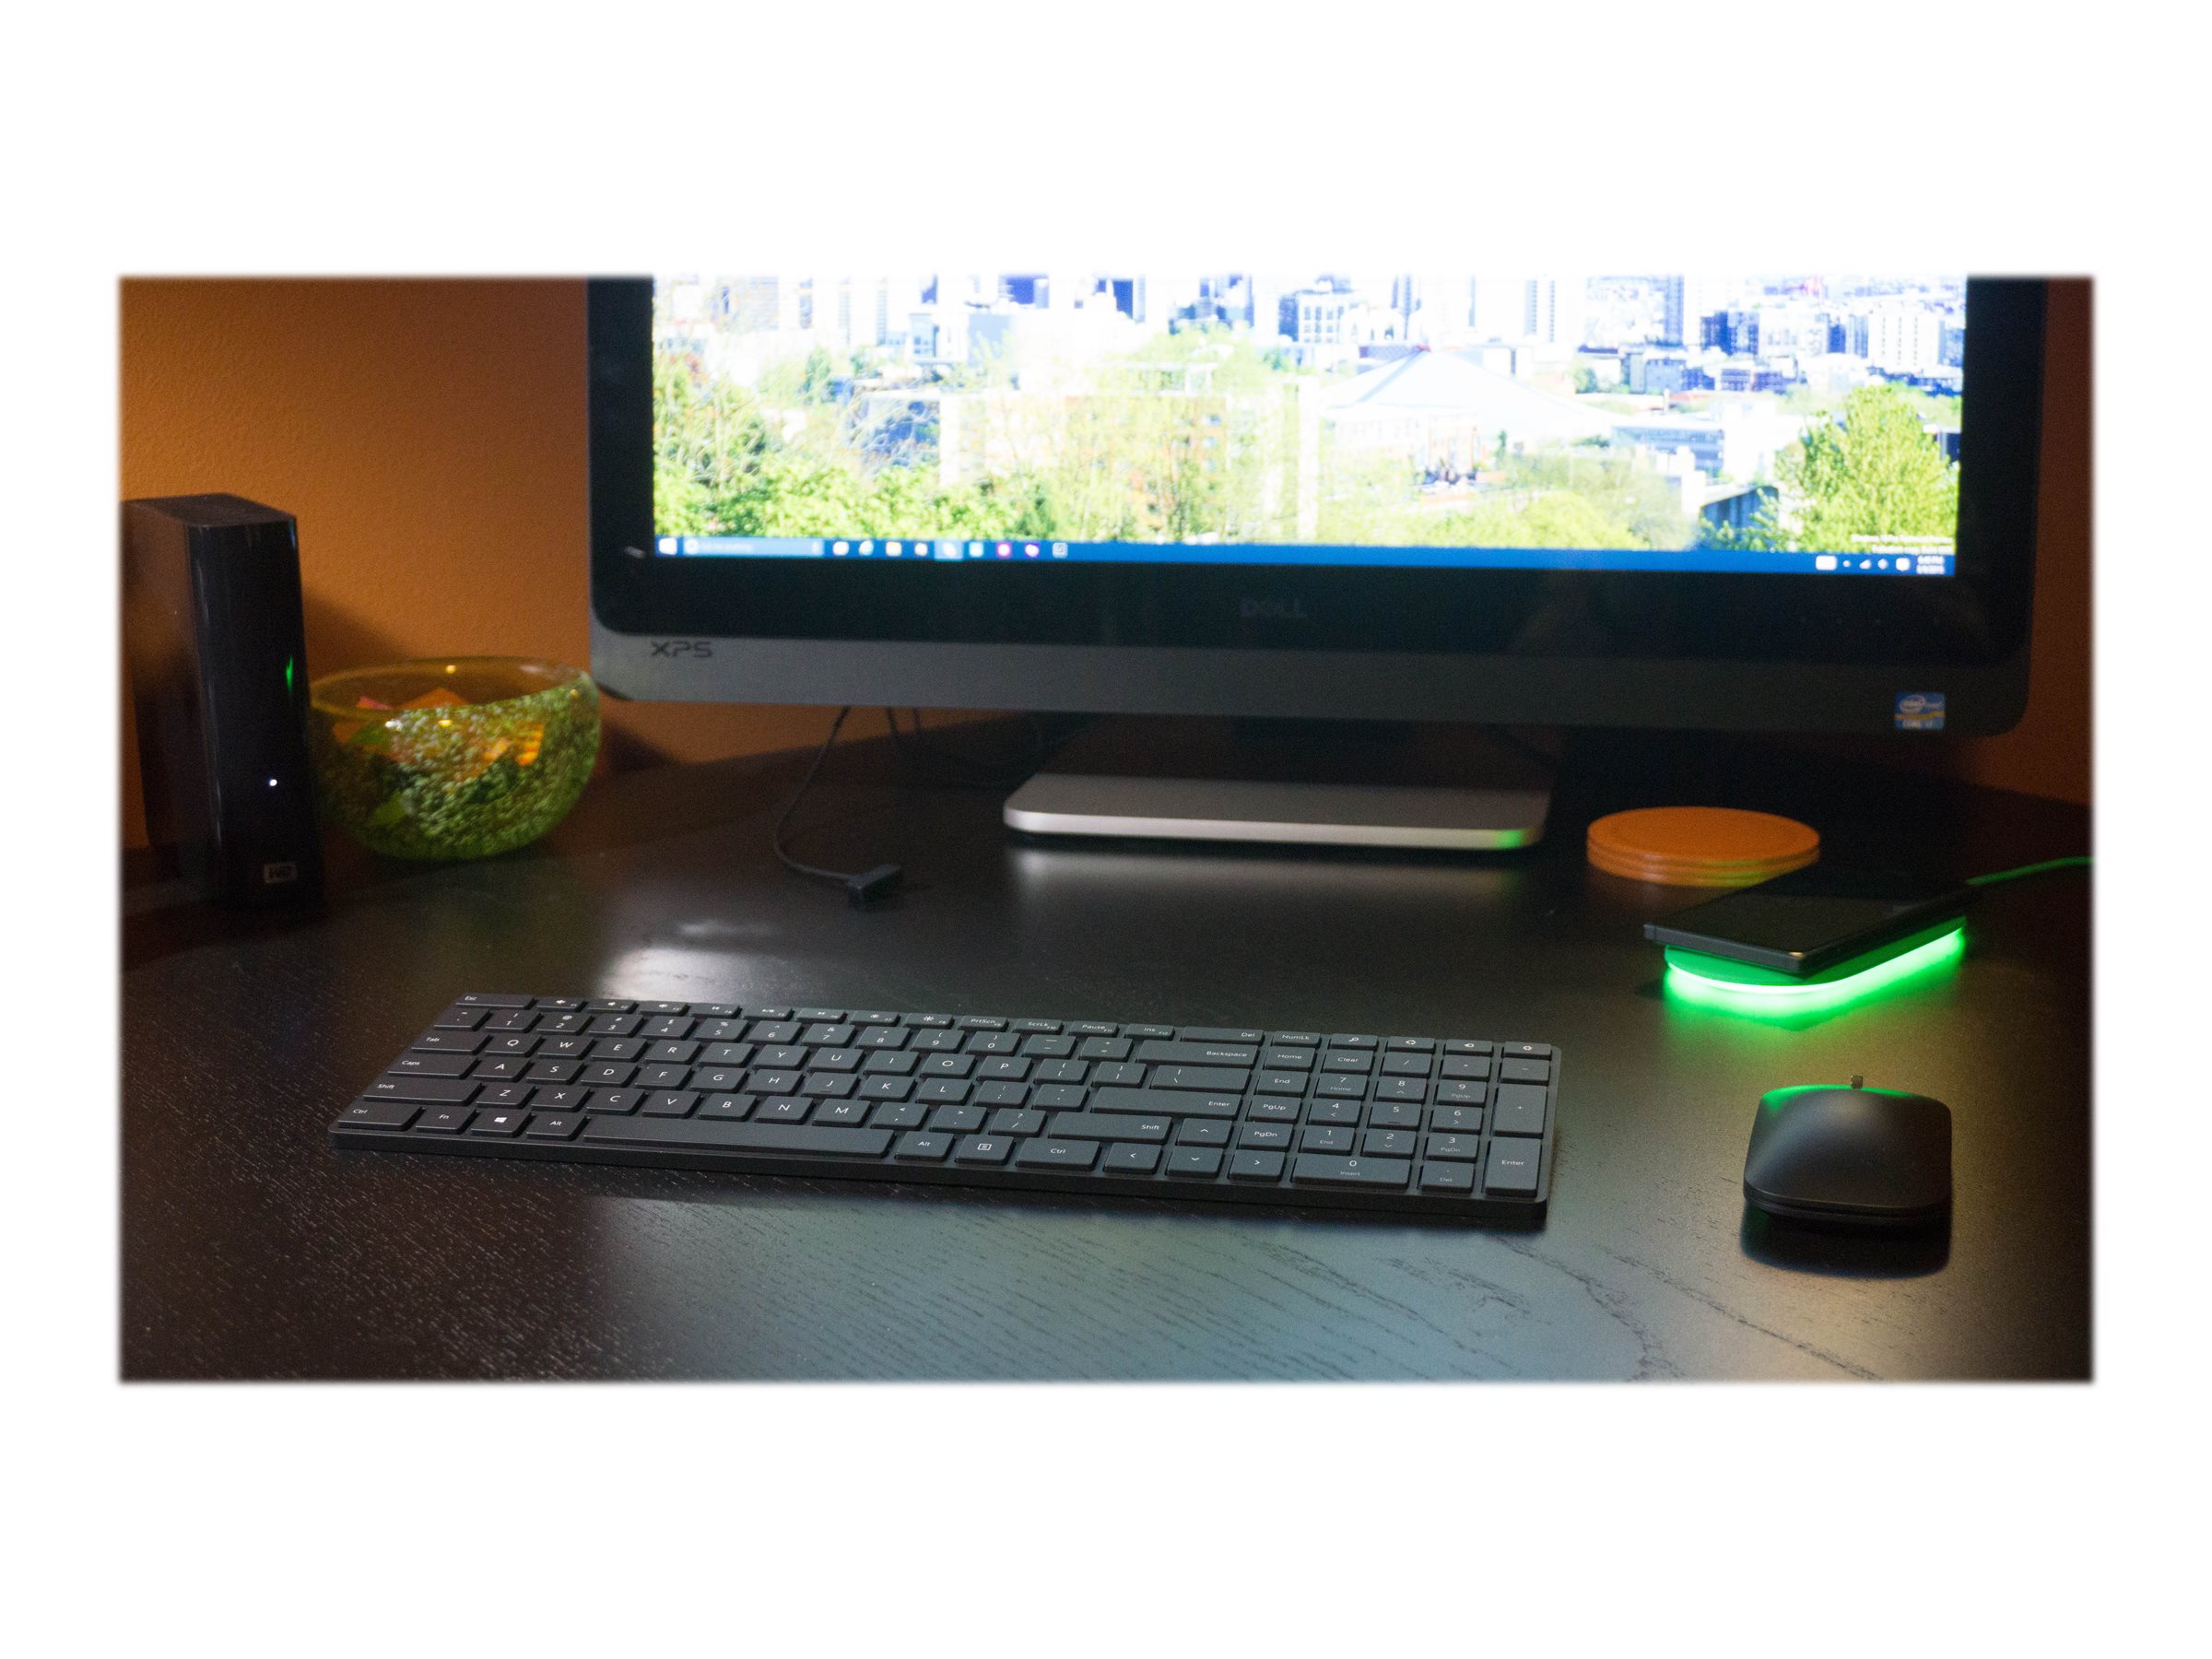 Microsoft Designer Bluetooth Desktop (7N9-00008) - Set mit Maus und Tastatur, deutsches QWERTZ Tastaturlayout, kabellos über Bluetooth